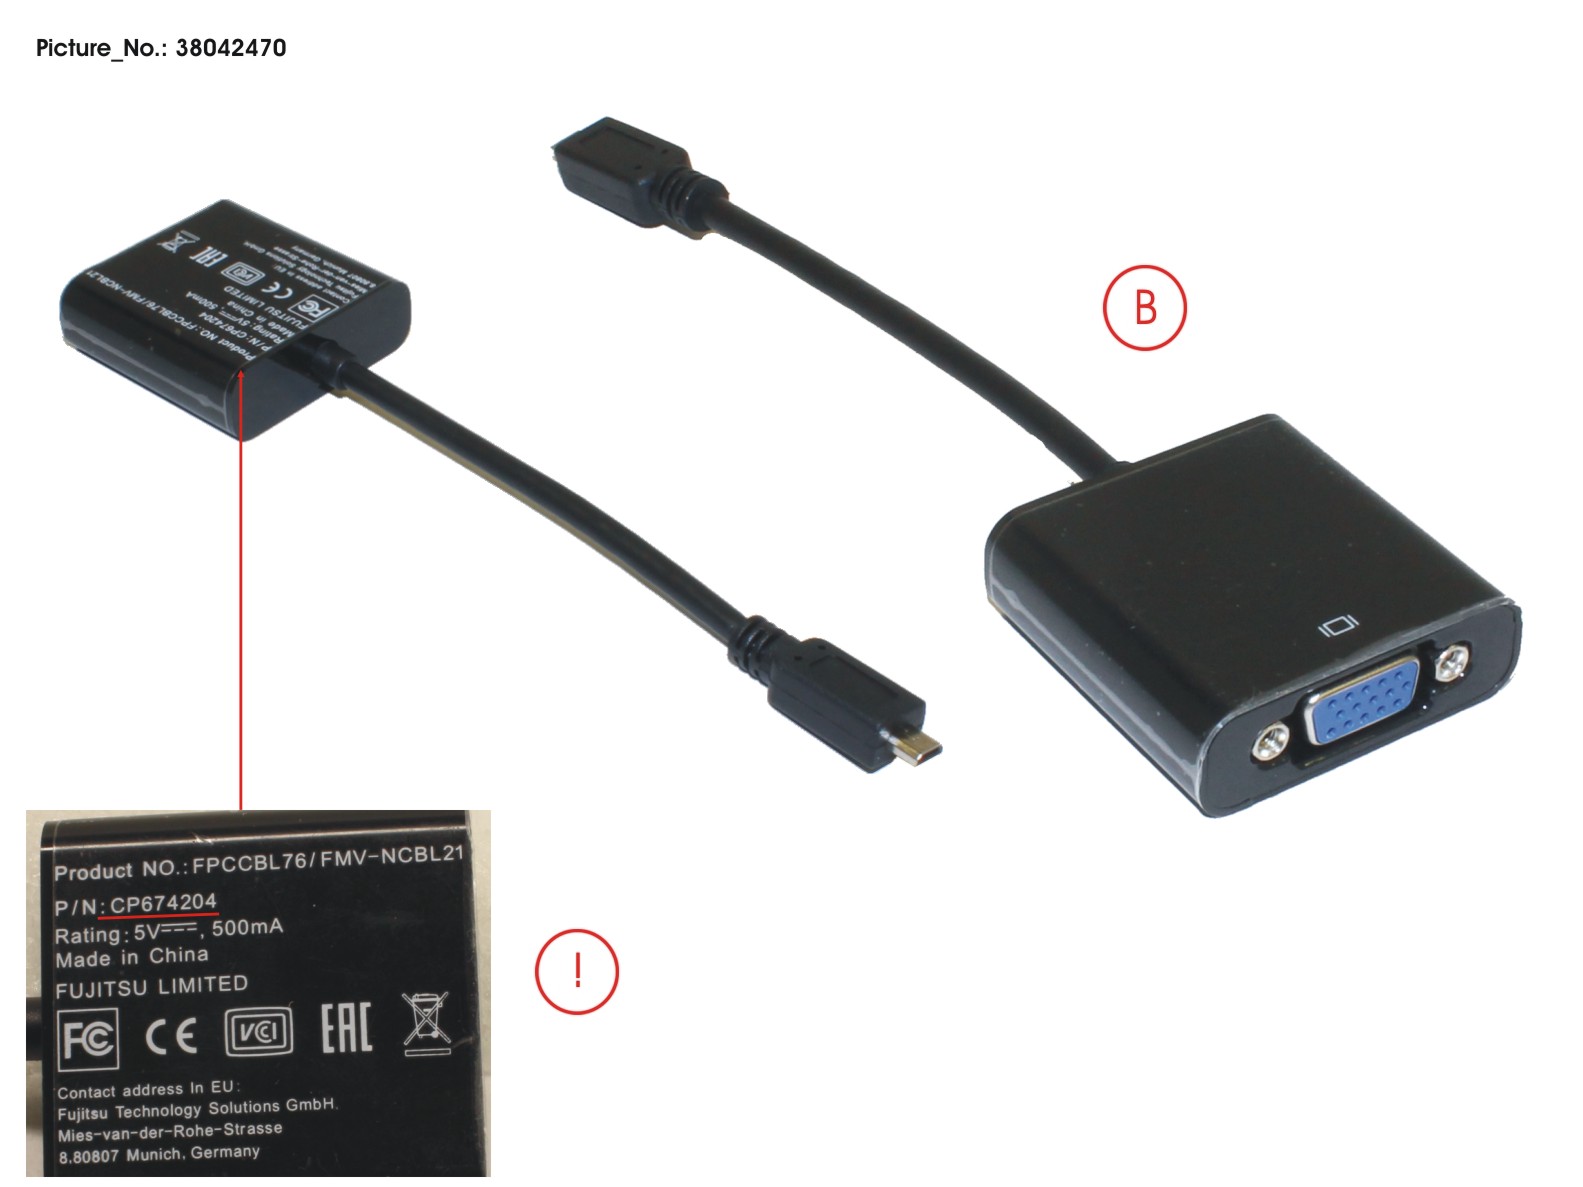 CABLE, VGA ADAPTER (MICRO HDMI TO VGA)